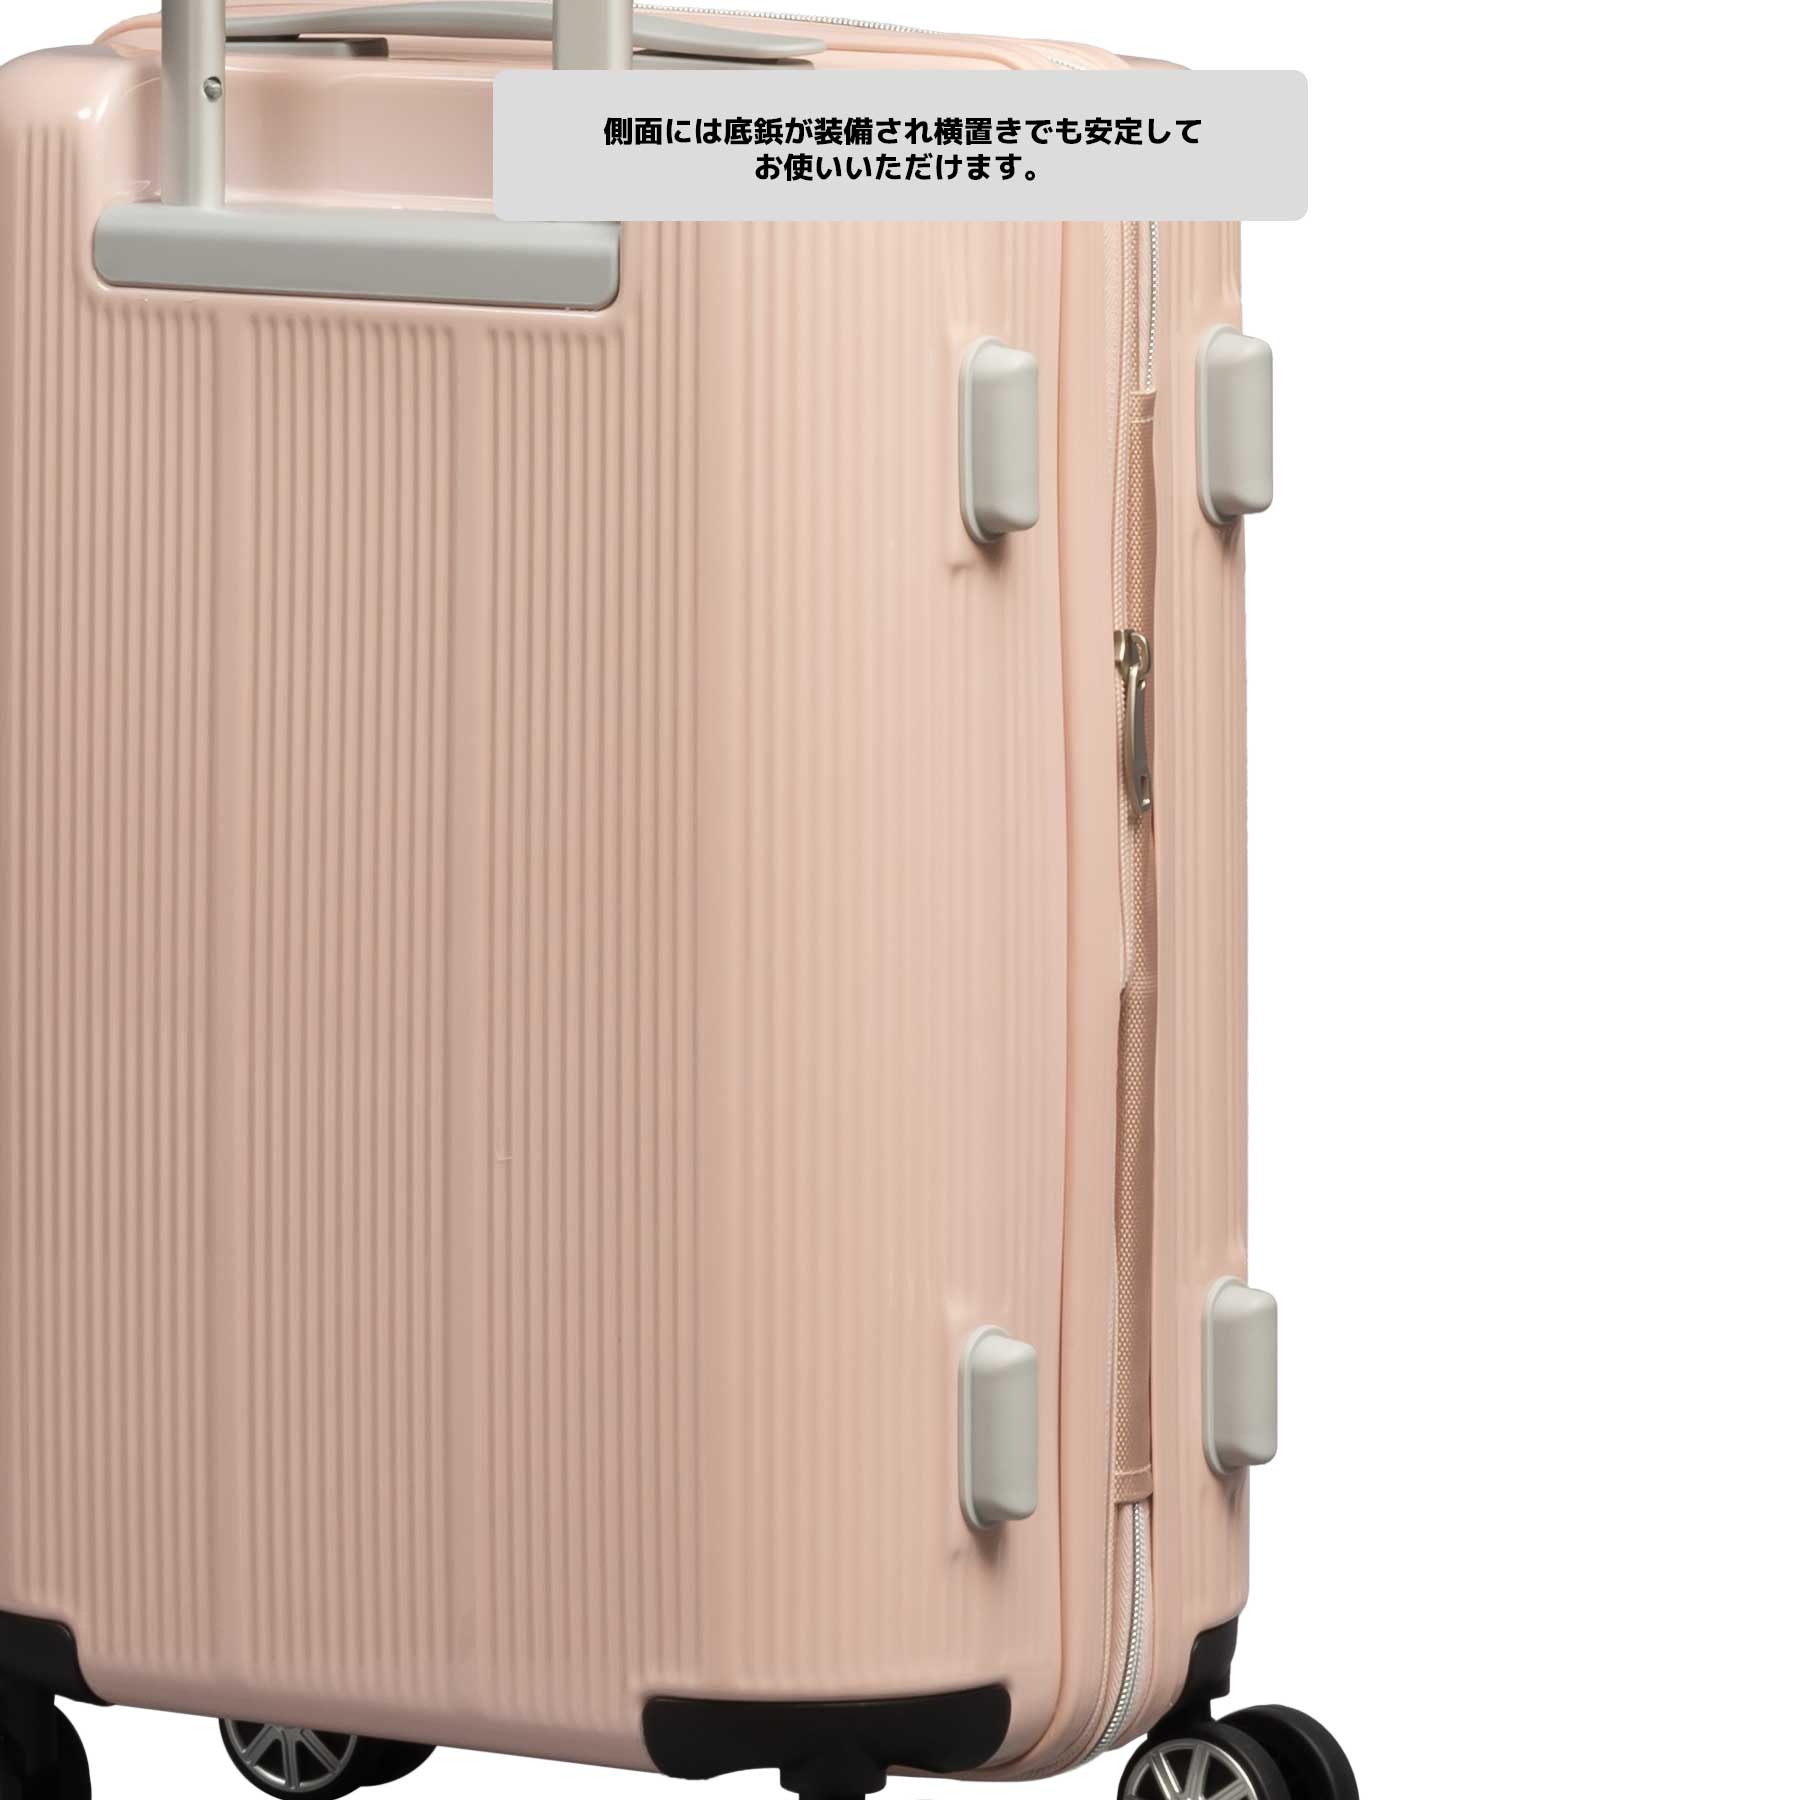 スーツケース Sサイズ 30〜35L marie claire マリ・クレール 機内 